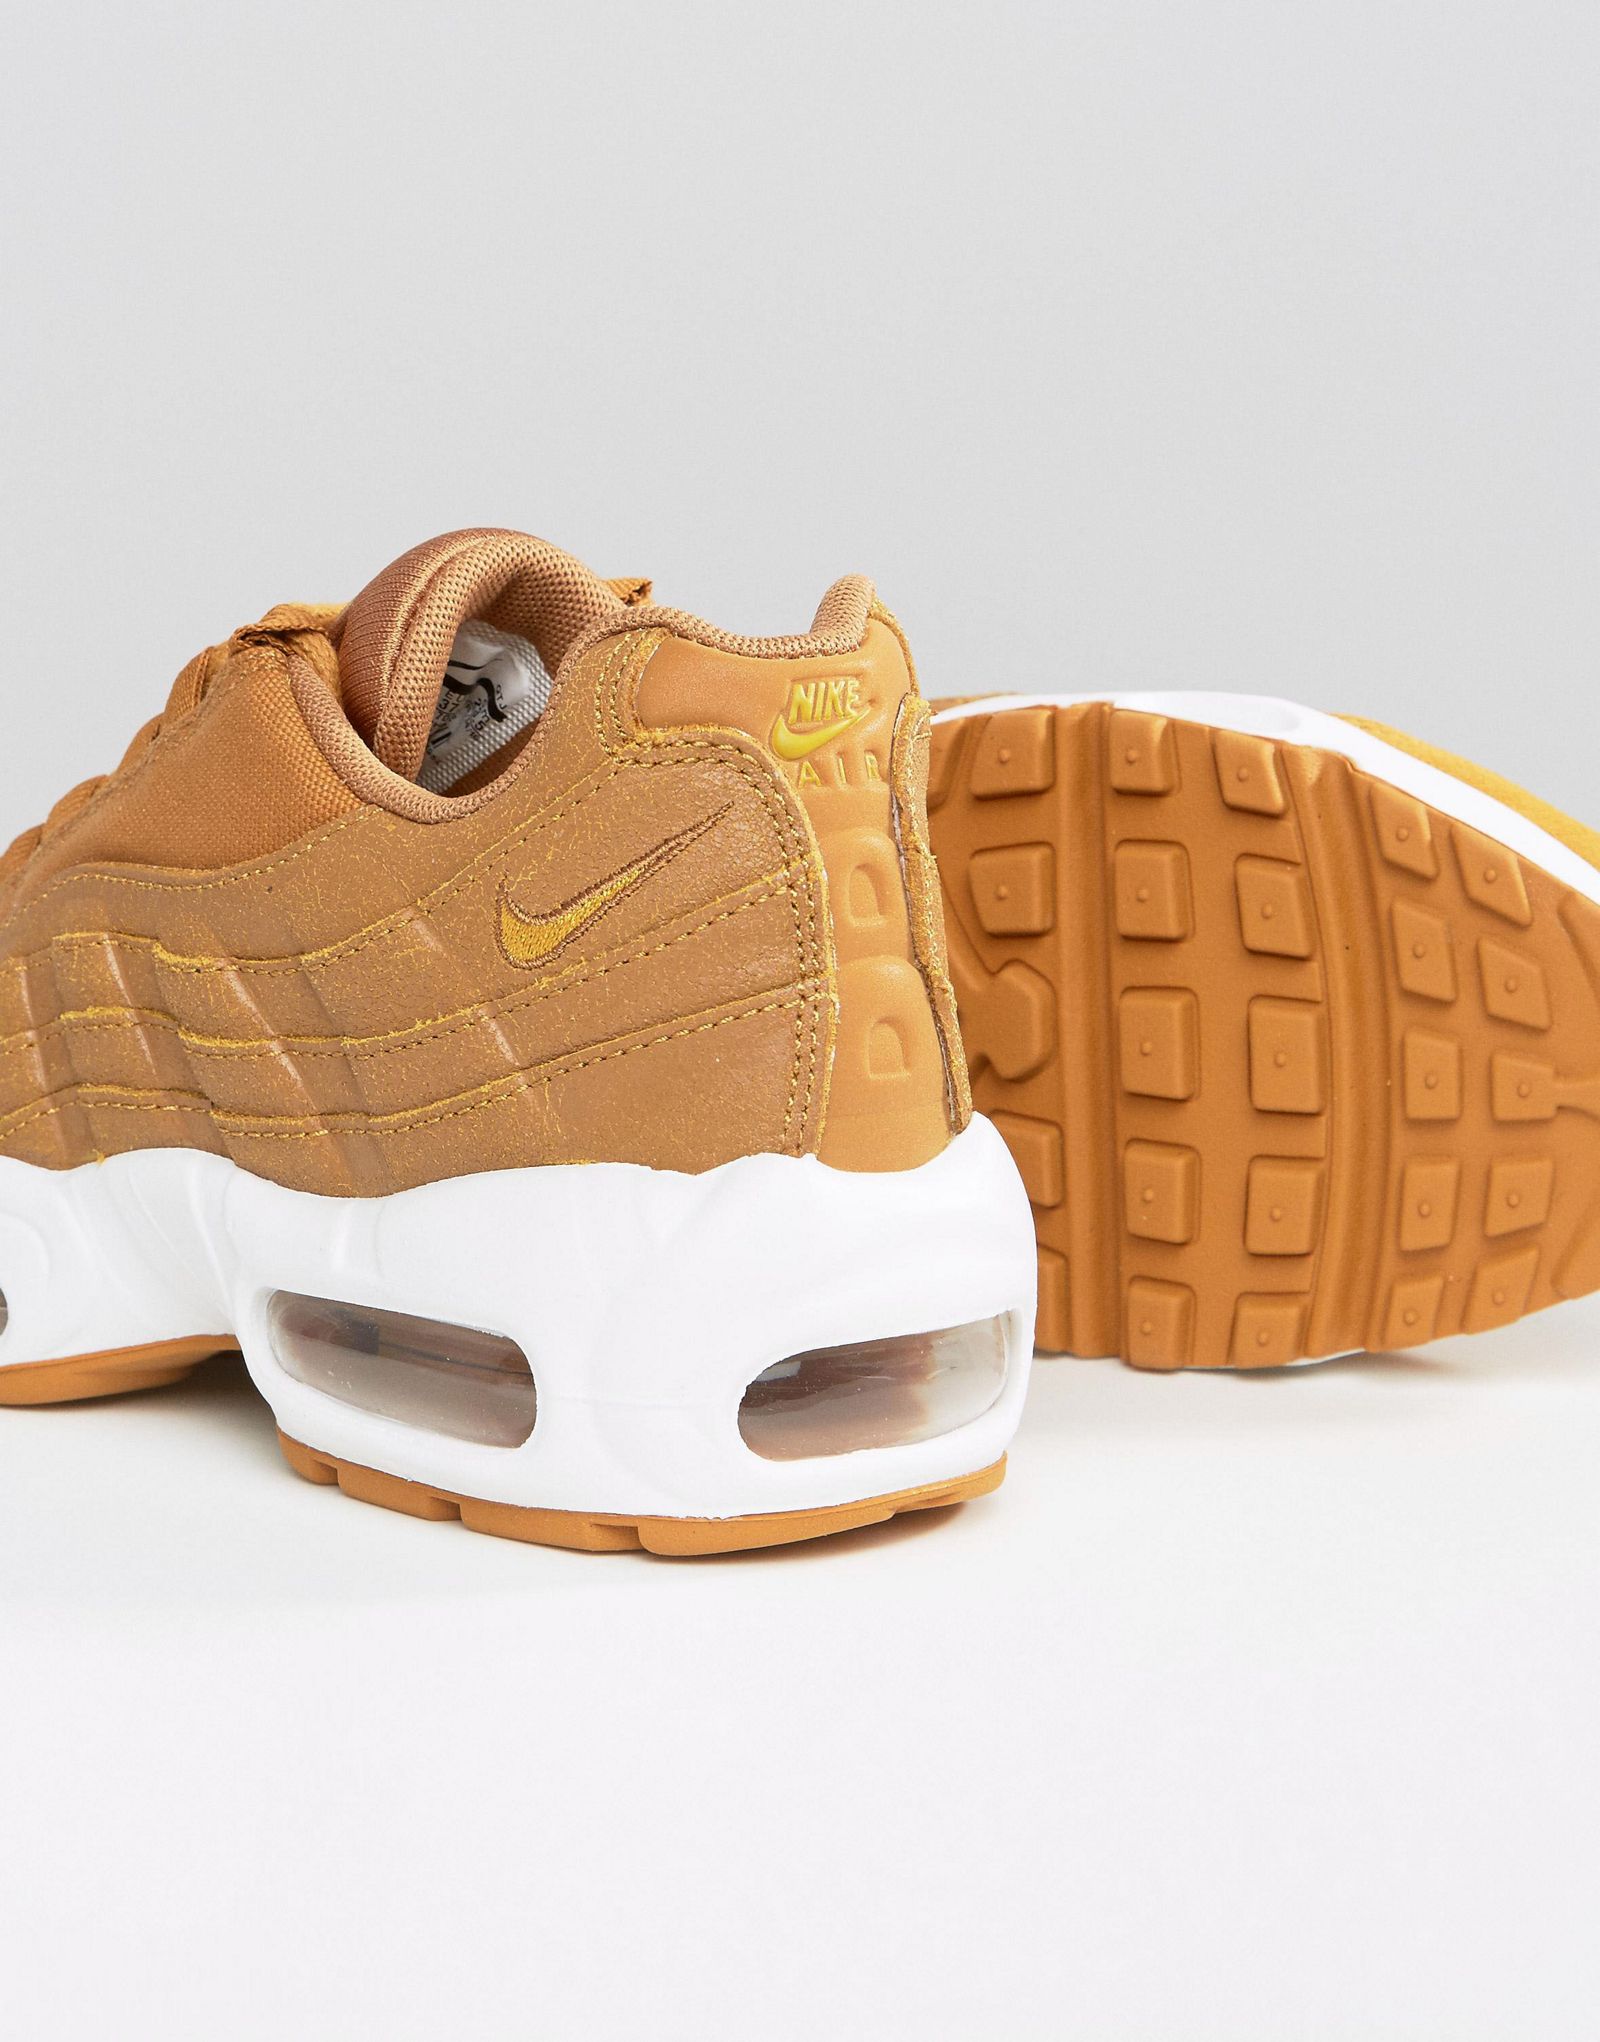 Nike Air Max 95 Premium Sneakers In Tan